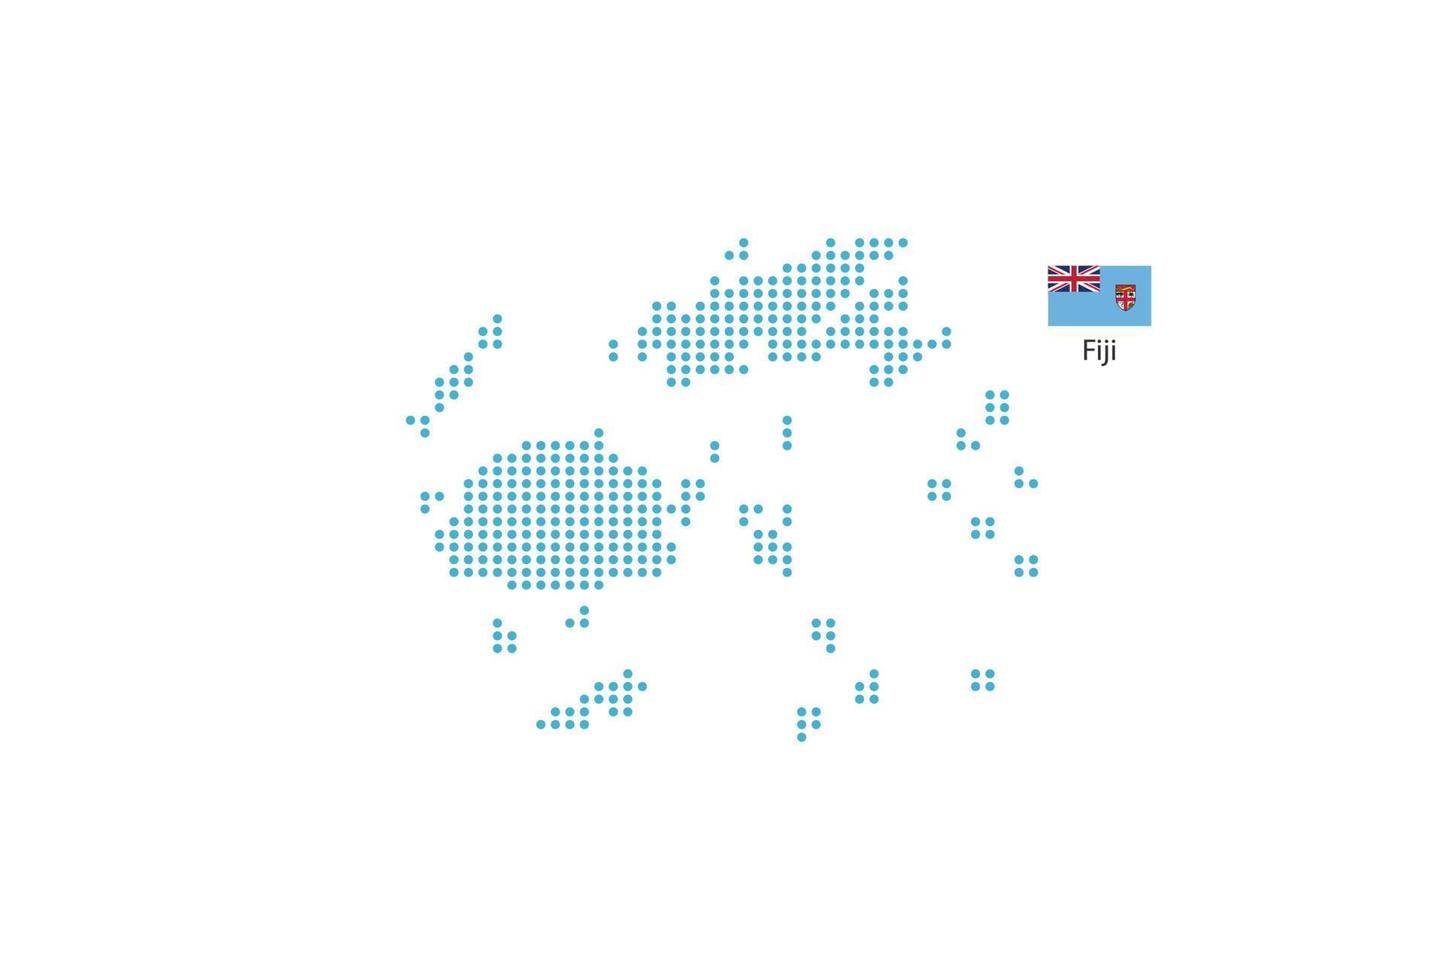 círculo azul de diseño de mapa de fiji, fondo blanco con bandera de fiji. vector